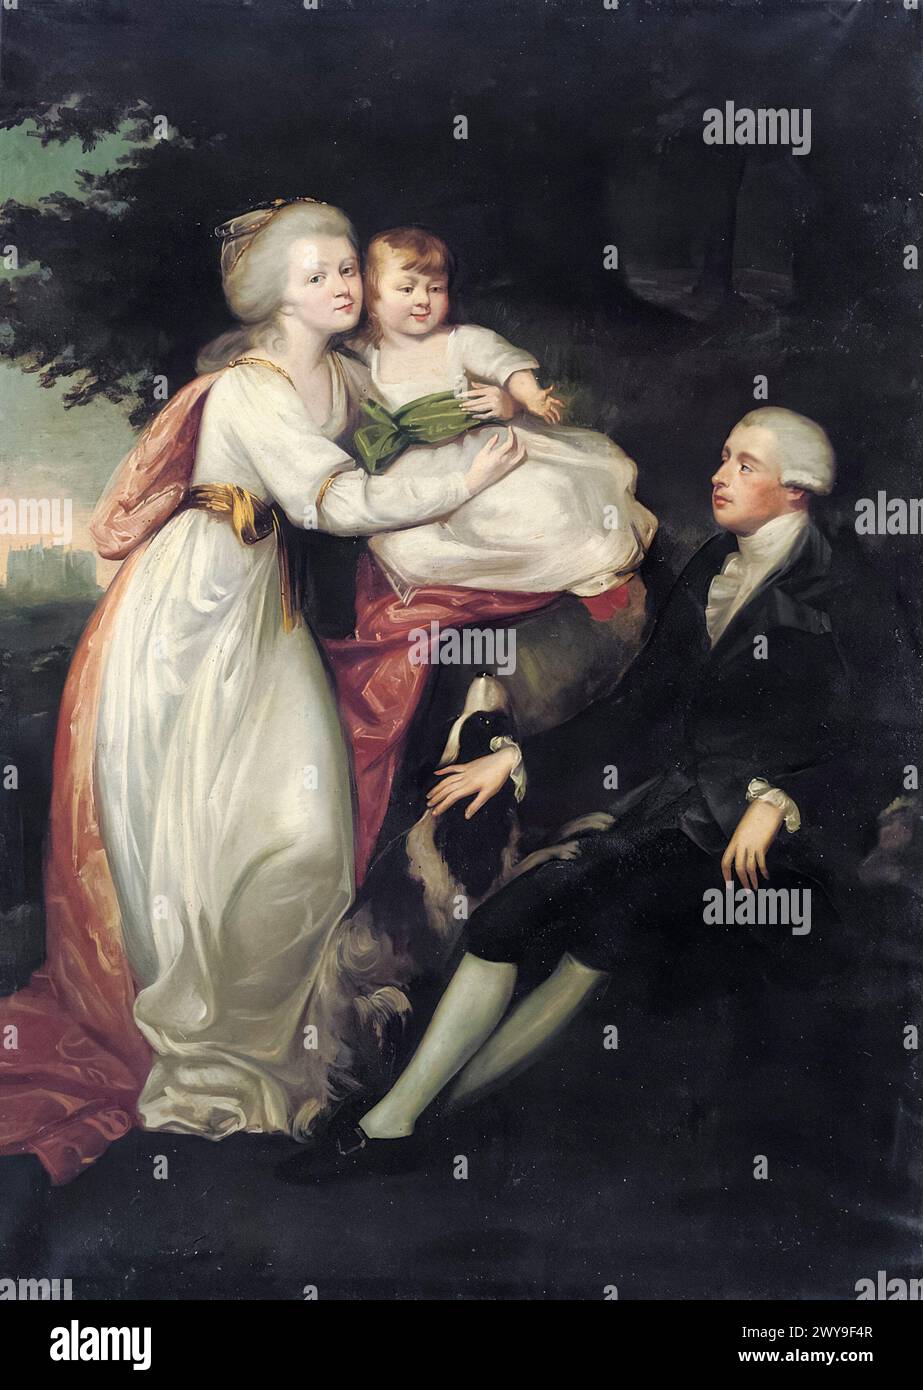 Frederick, Lord North, 2e comte de Guilford (1732-1792), premier ministre de Grande-Bretagne, 1770-1782, dans un portrait de famille avec sa femme Anne et son enfant, peut-être George Augustus, dans un paysage, Wroxton Abbey Beyond, portrait peint à l'huile sur toile, 1760-1769 Banque D'Images